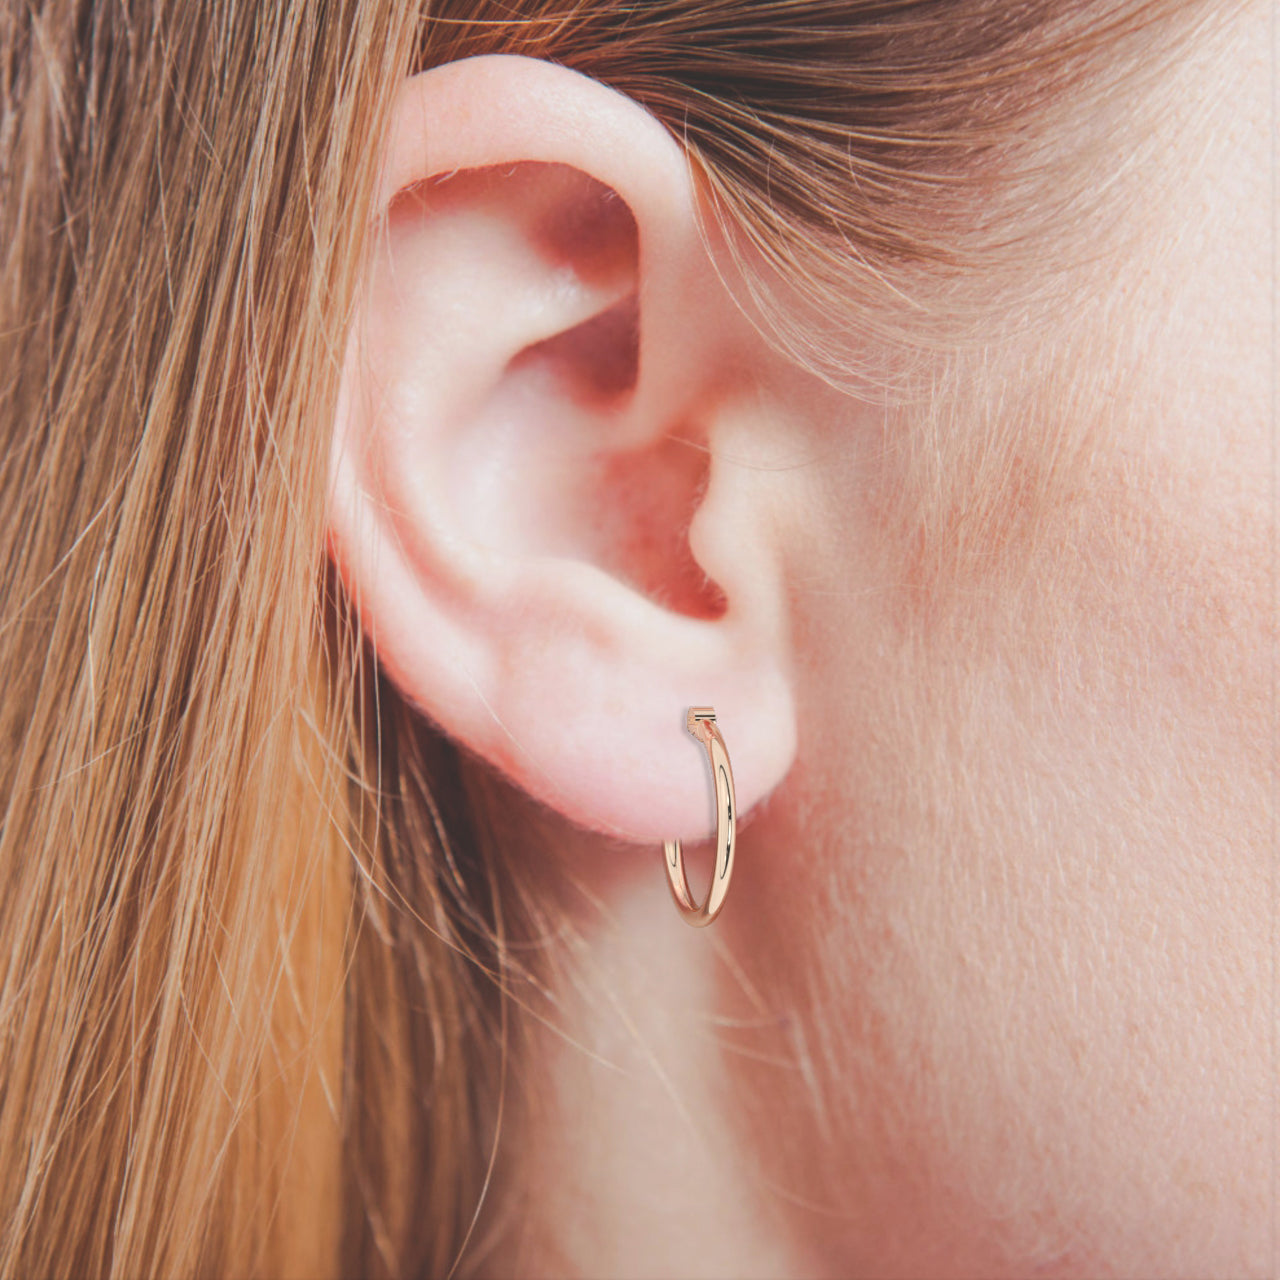 Gold Round Shape Earrings | Gold Filled Earrings | Hoops Earrings | Minimalist Earrings